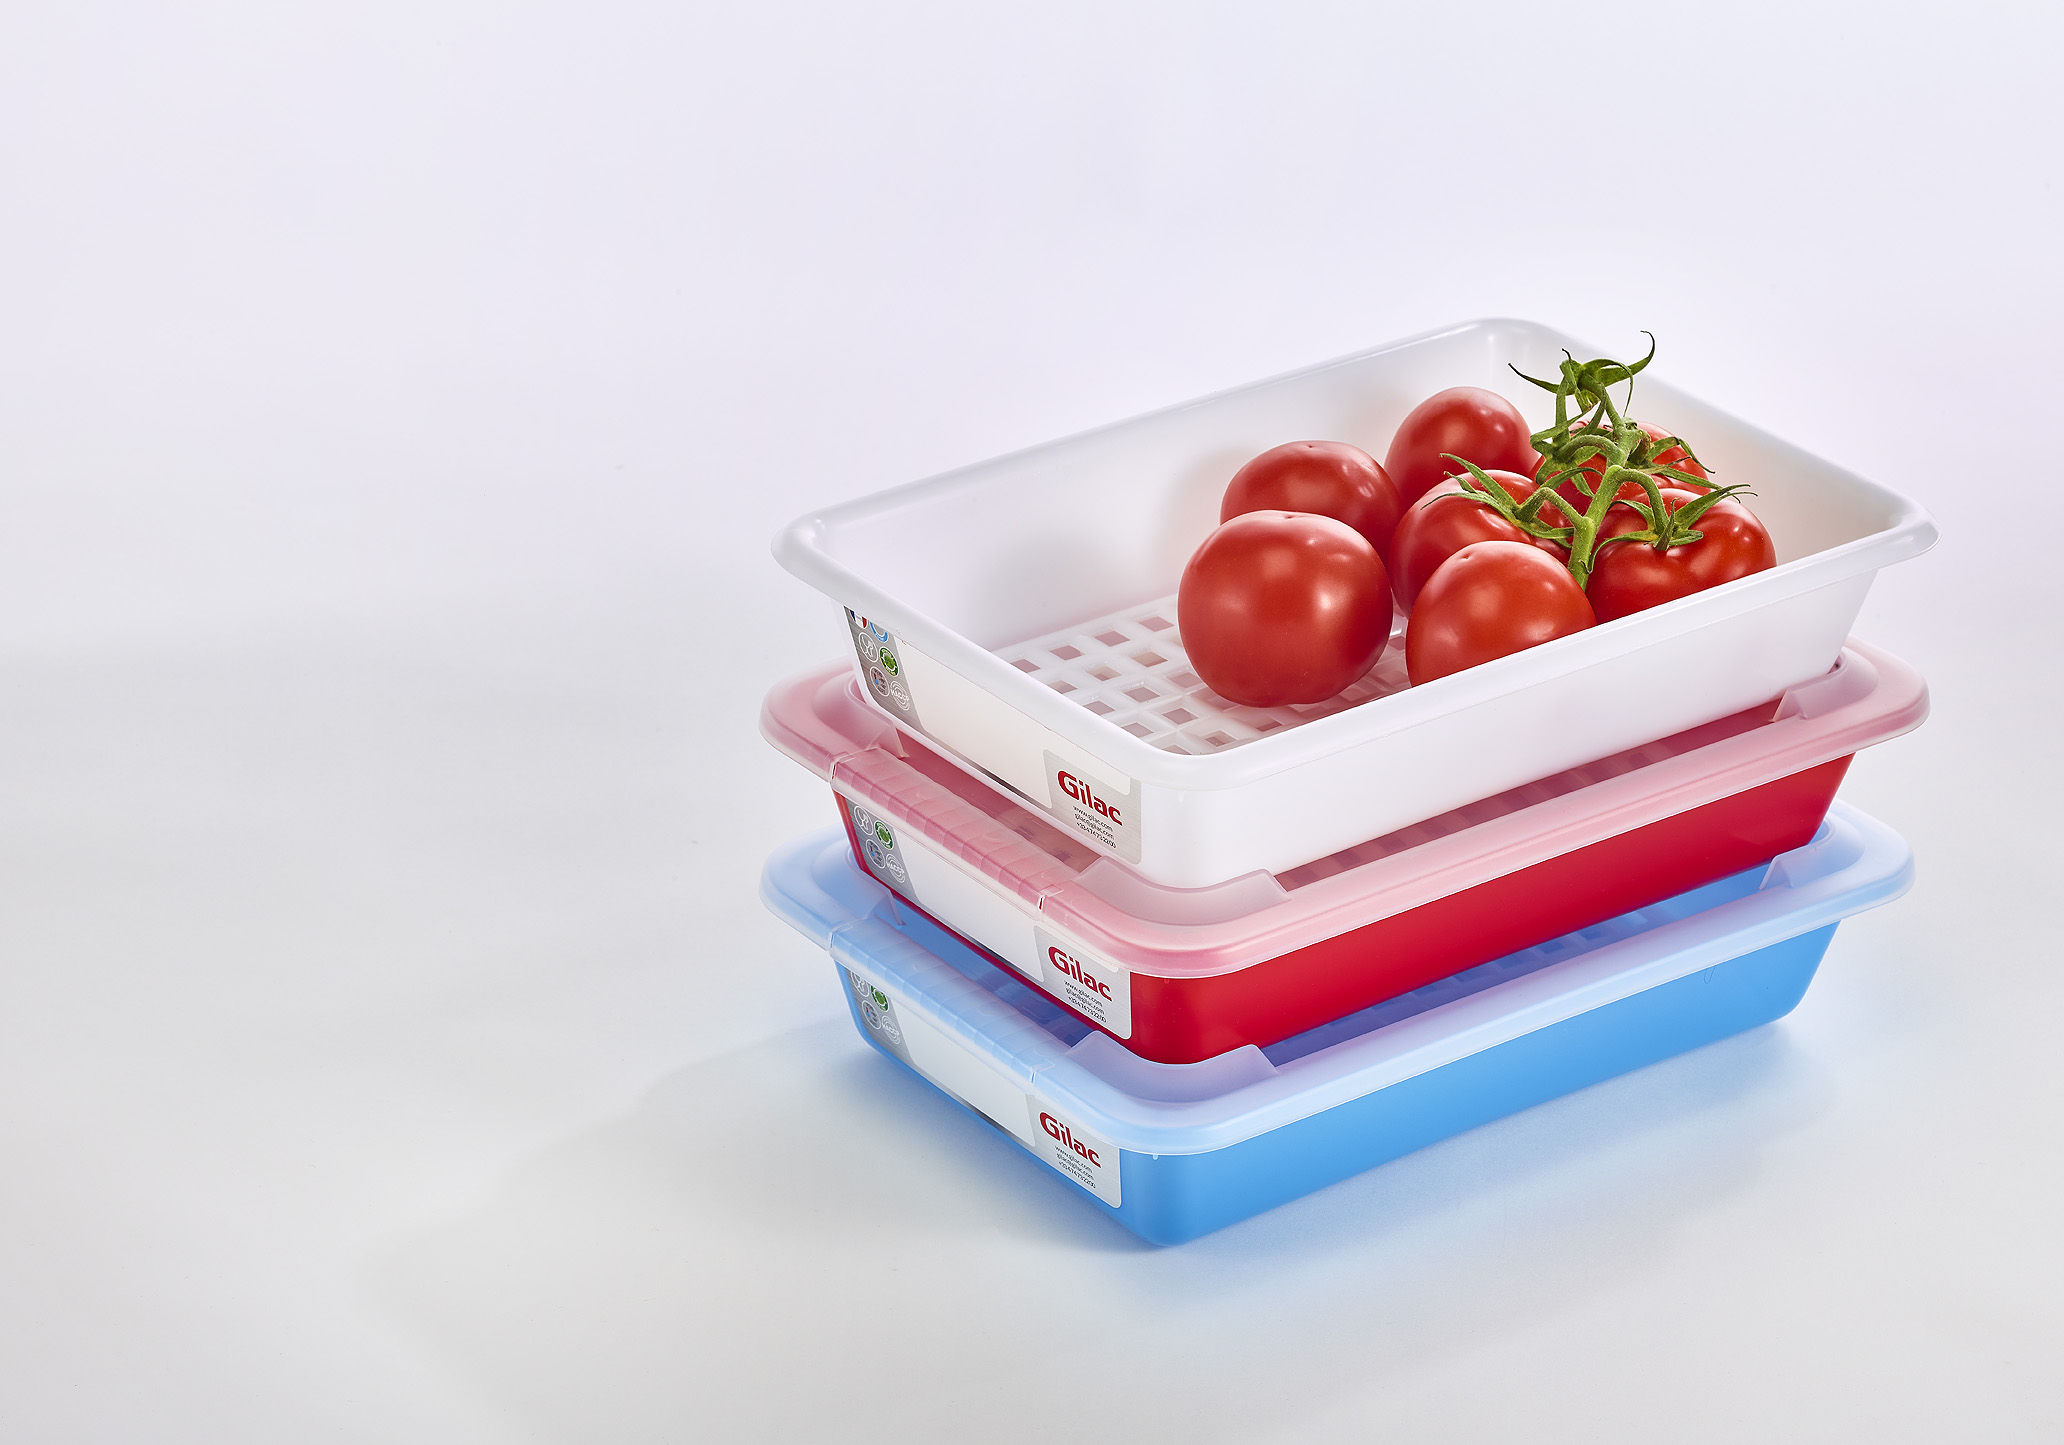 Trois bacs de stockages bleus, blancs et rouges de la marque Gilac contenant des tomates et au fond percé de trous.